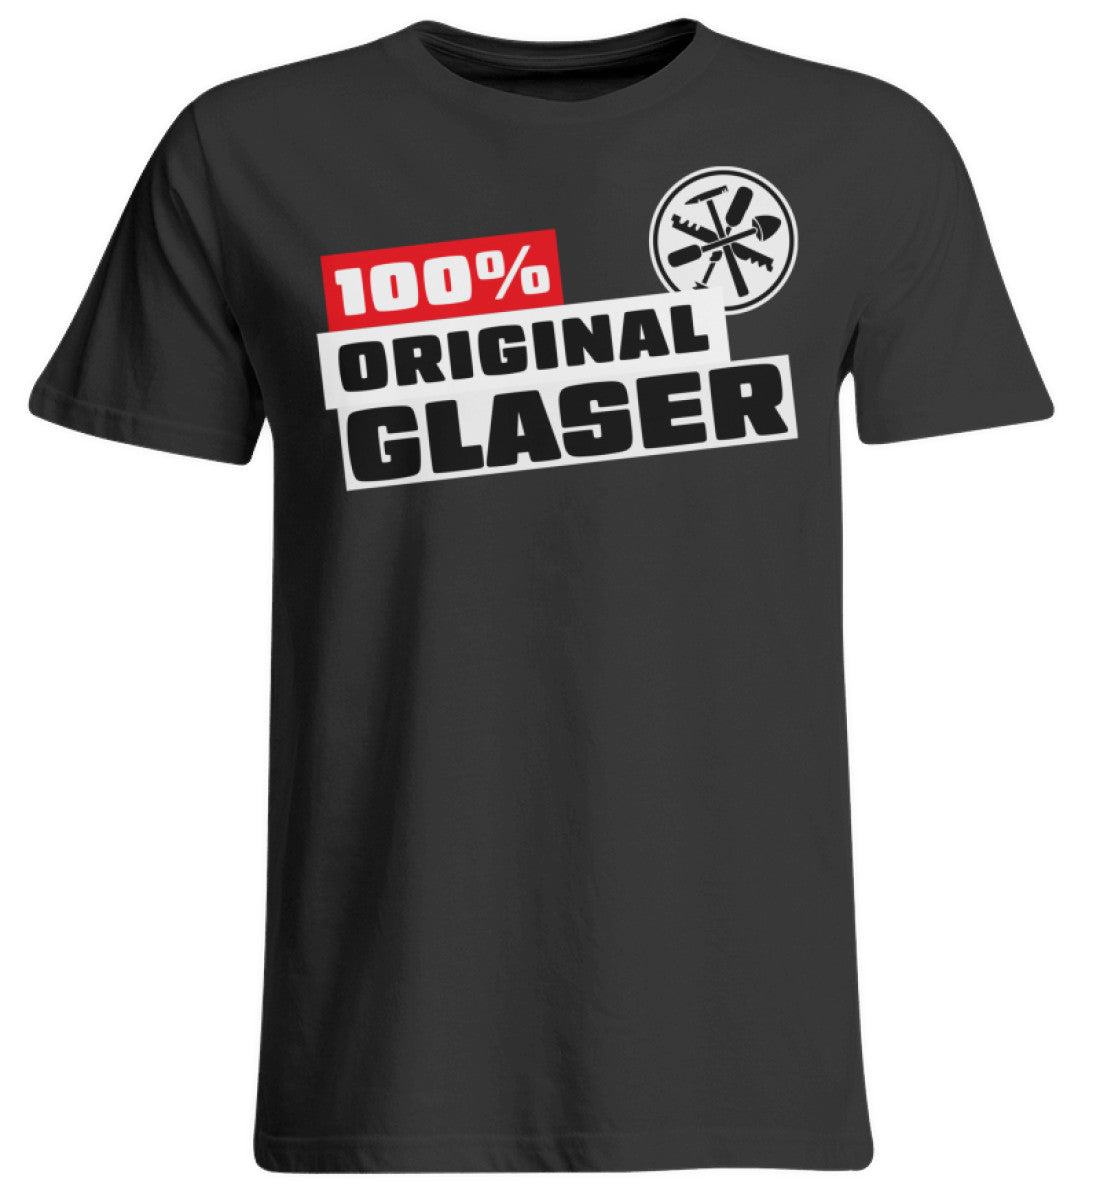 Handwerker Übergrößen T-Shirt 100 % Glaser www.handwerkerfashion.de